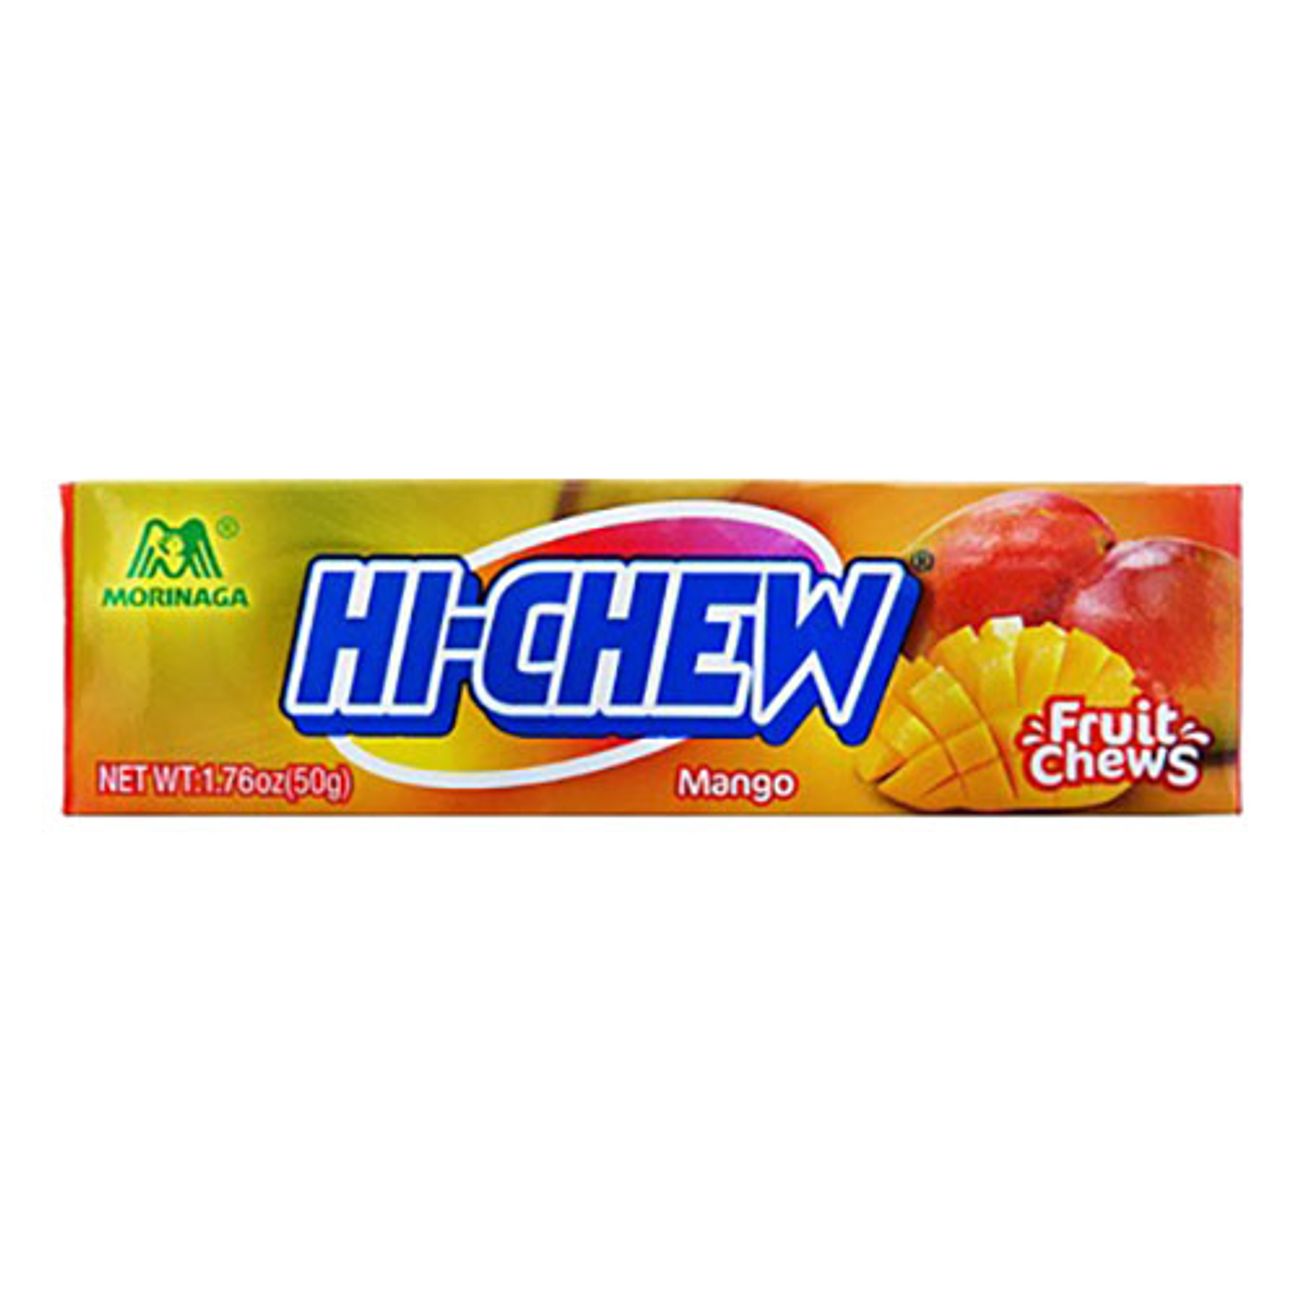 hi-chew-mango-1